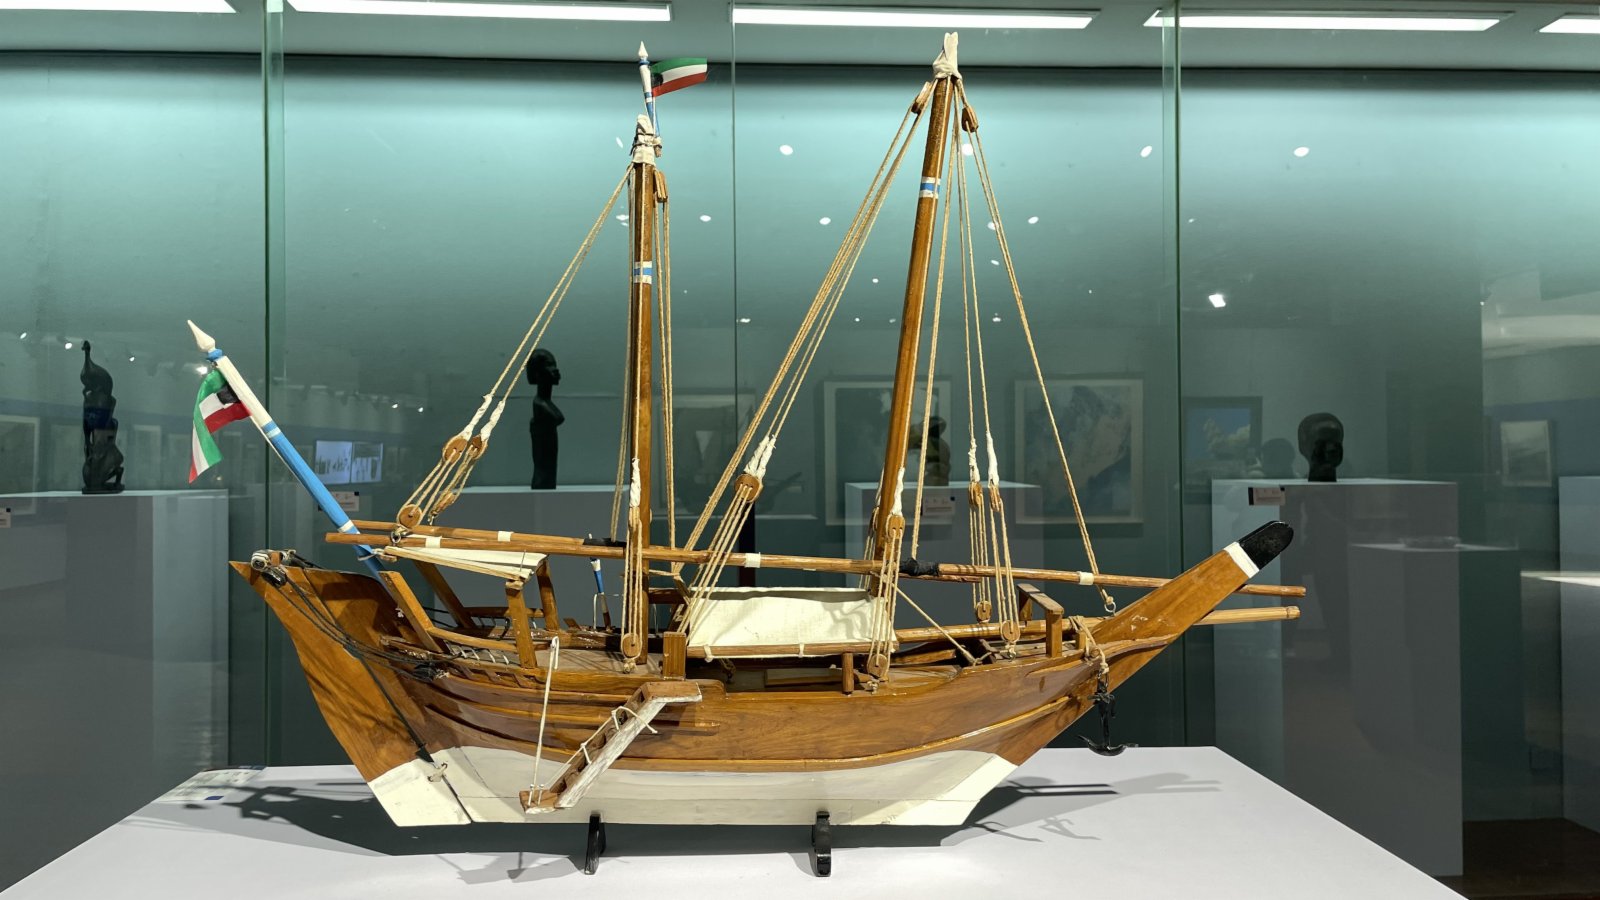 現場展出的科威特雙桅木帆船模型。(記者張仕珍攝)